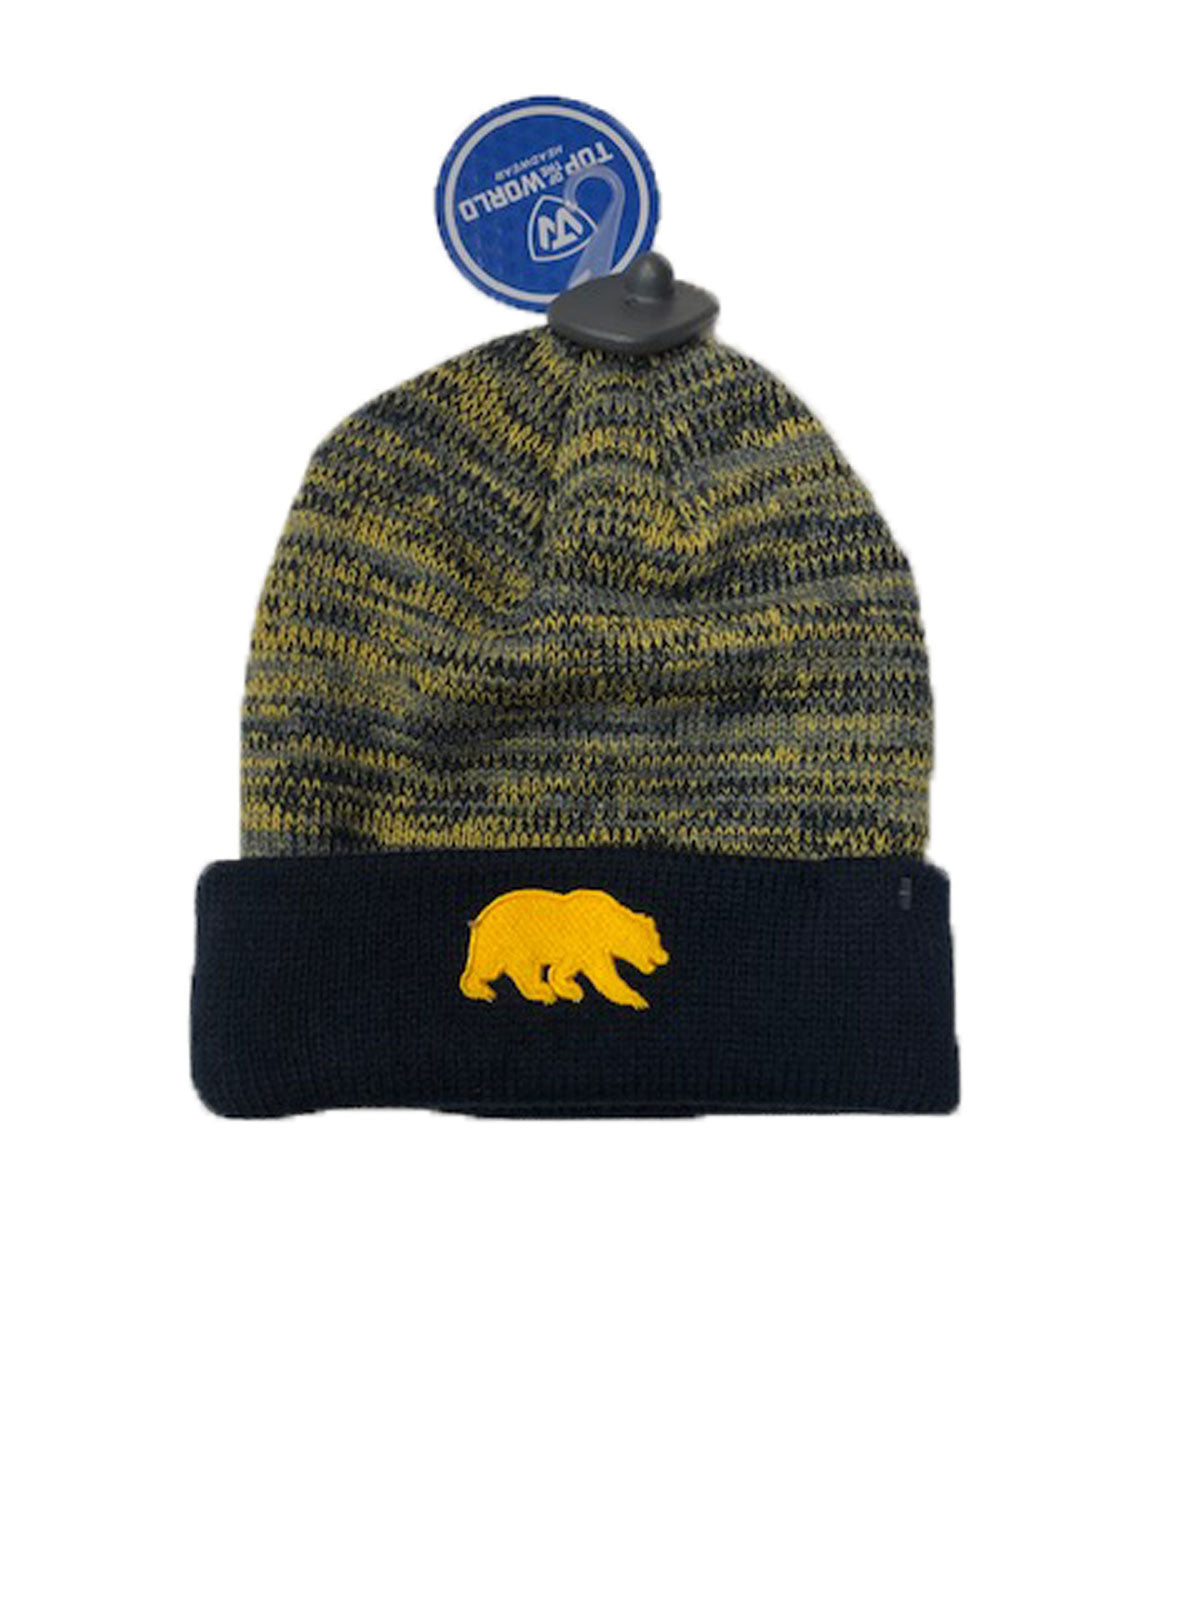 U.C. Berkeley Cal multi color tweed beanie hat-Navy-Shop College Wear